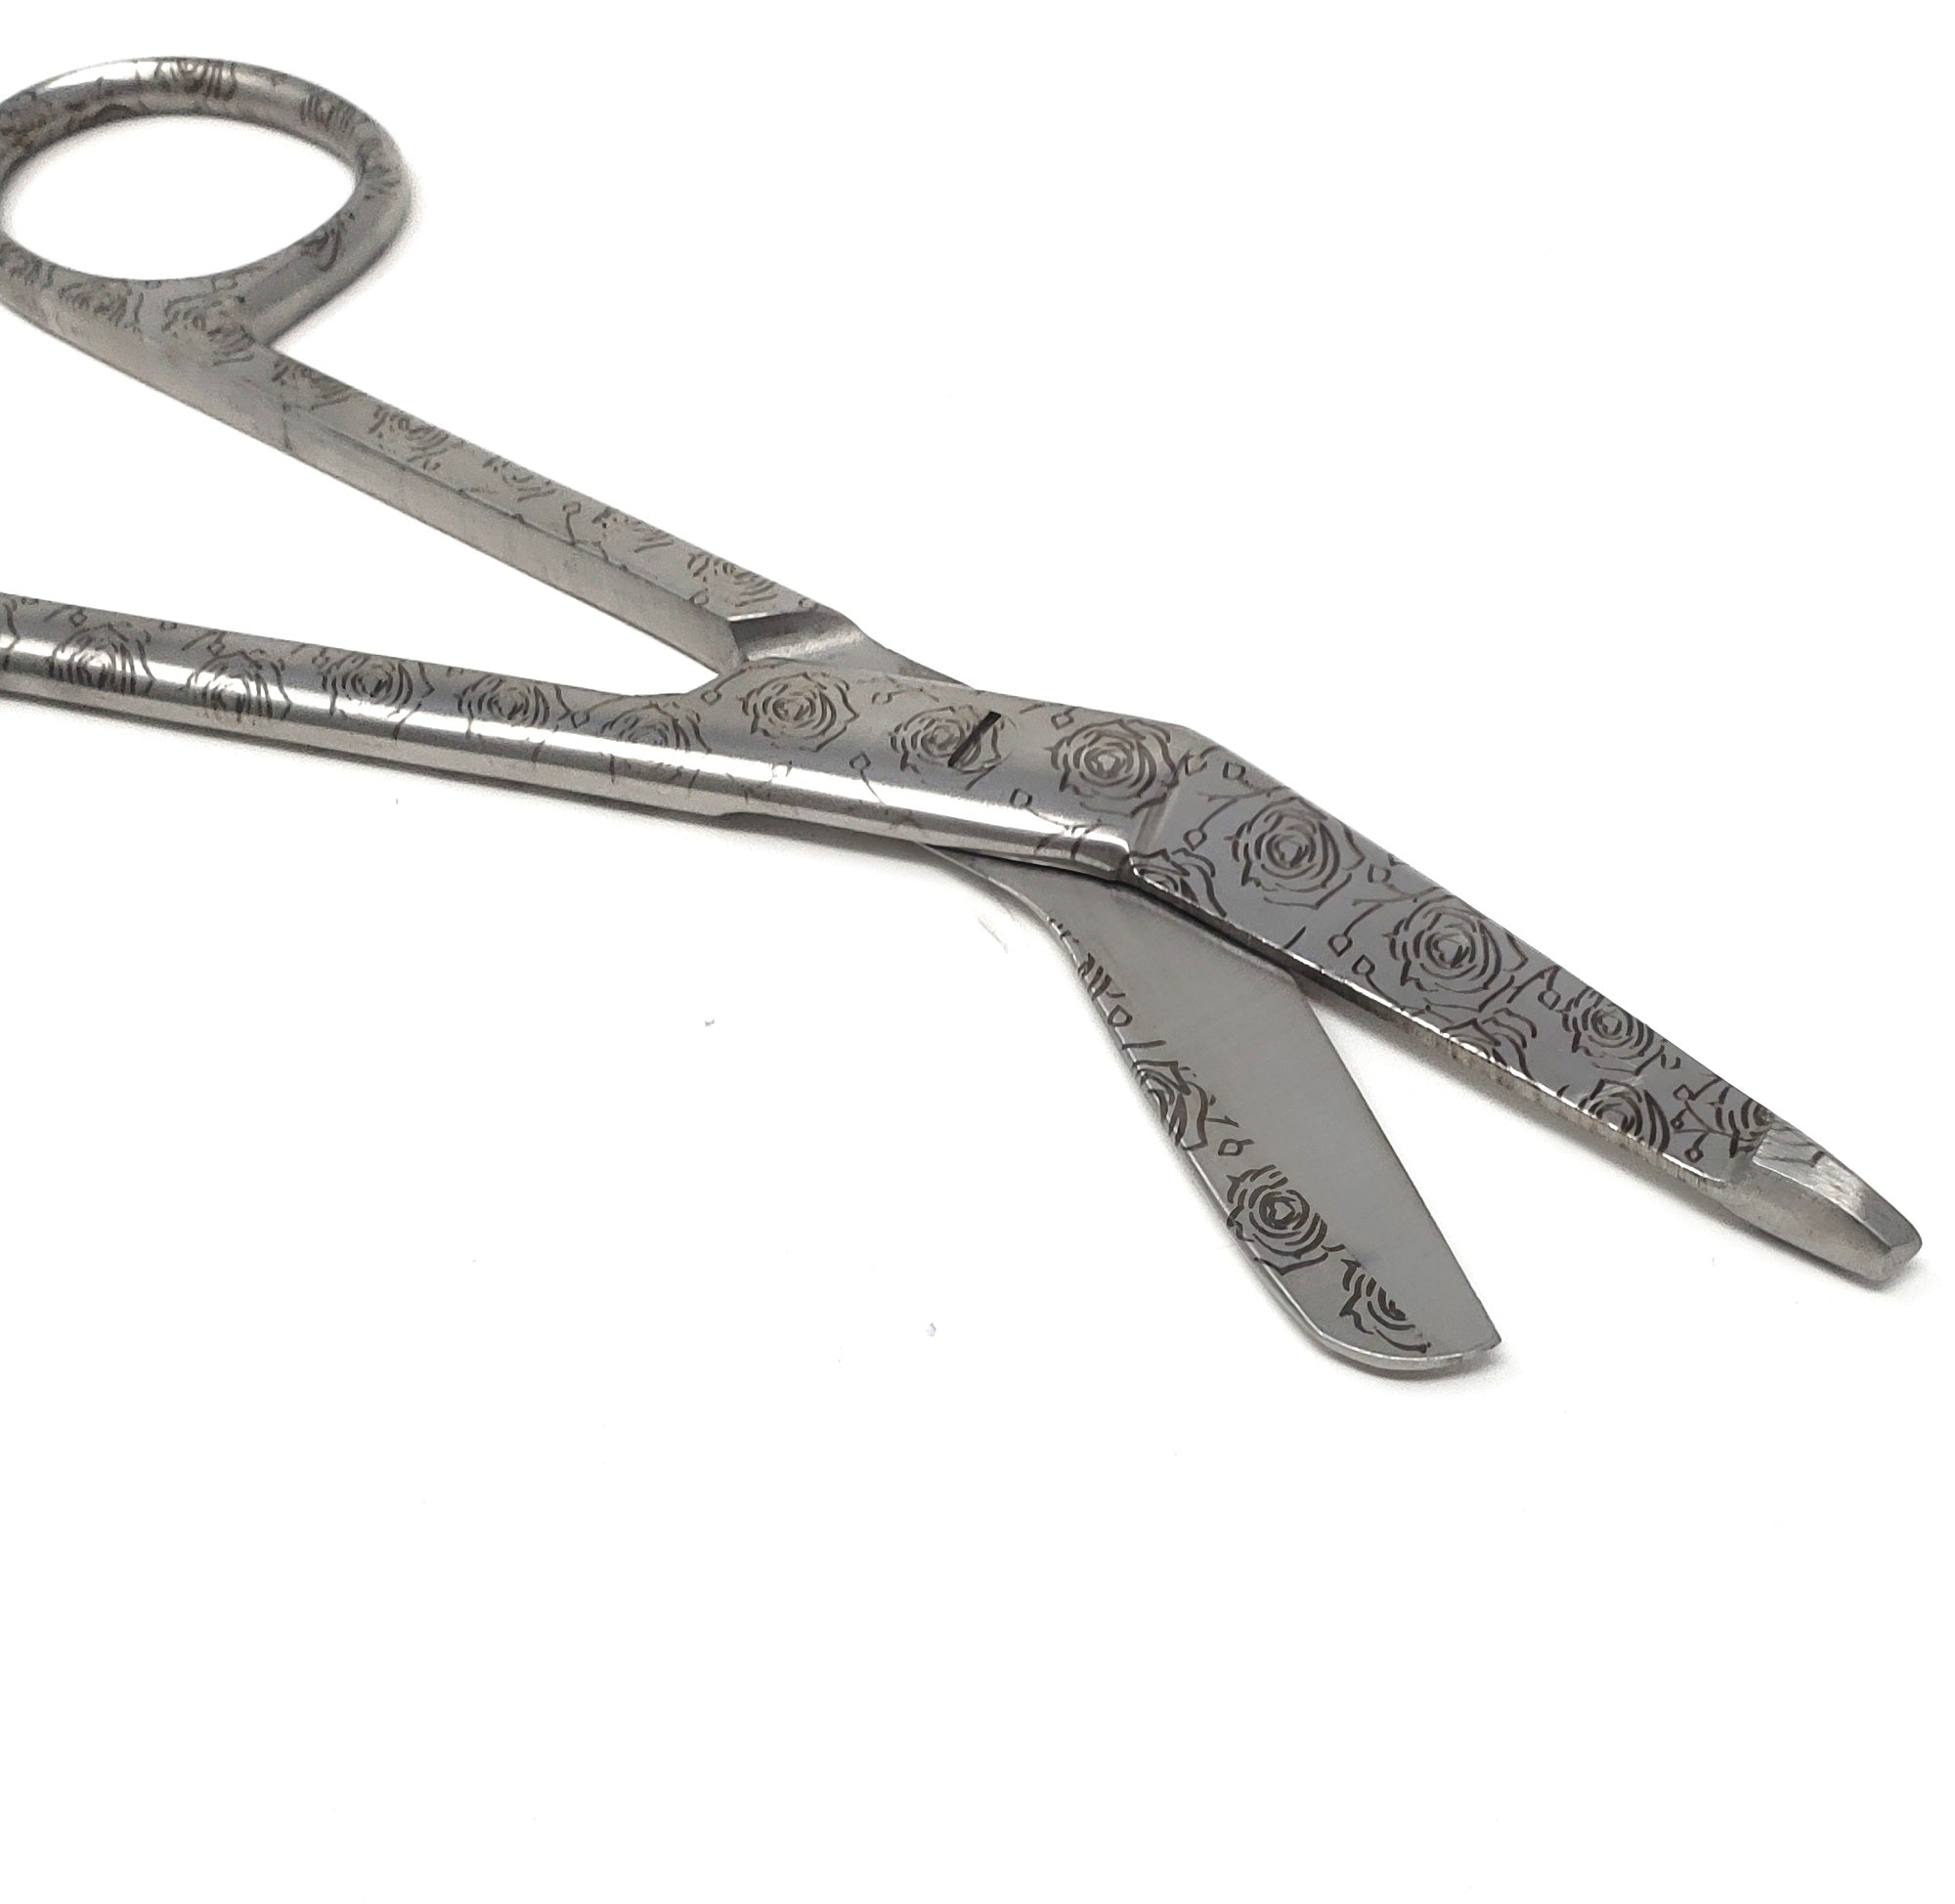 Stainless Steel 5.5 Bandage Lister Scissors for Nurses & Students Gift, Engraved Rose Garden